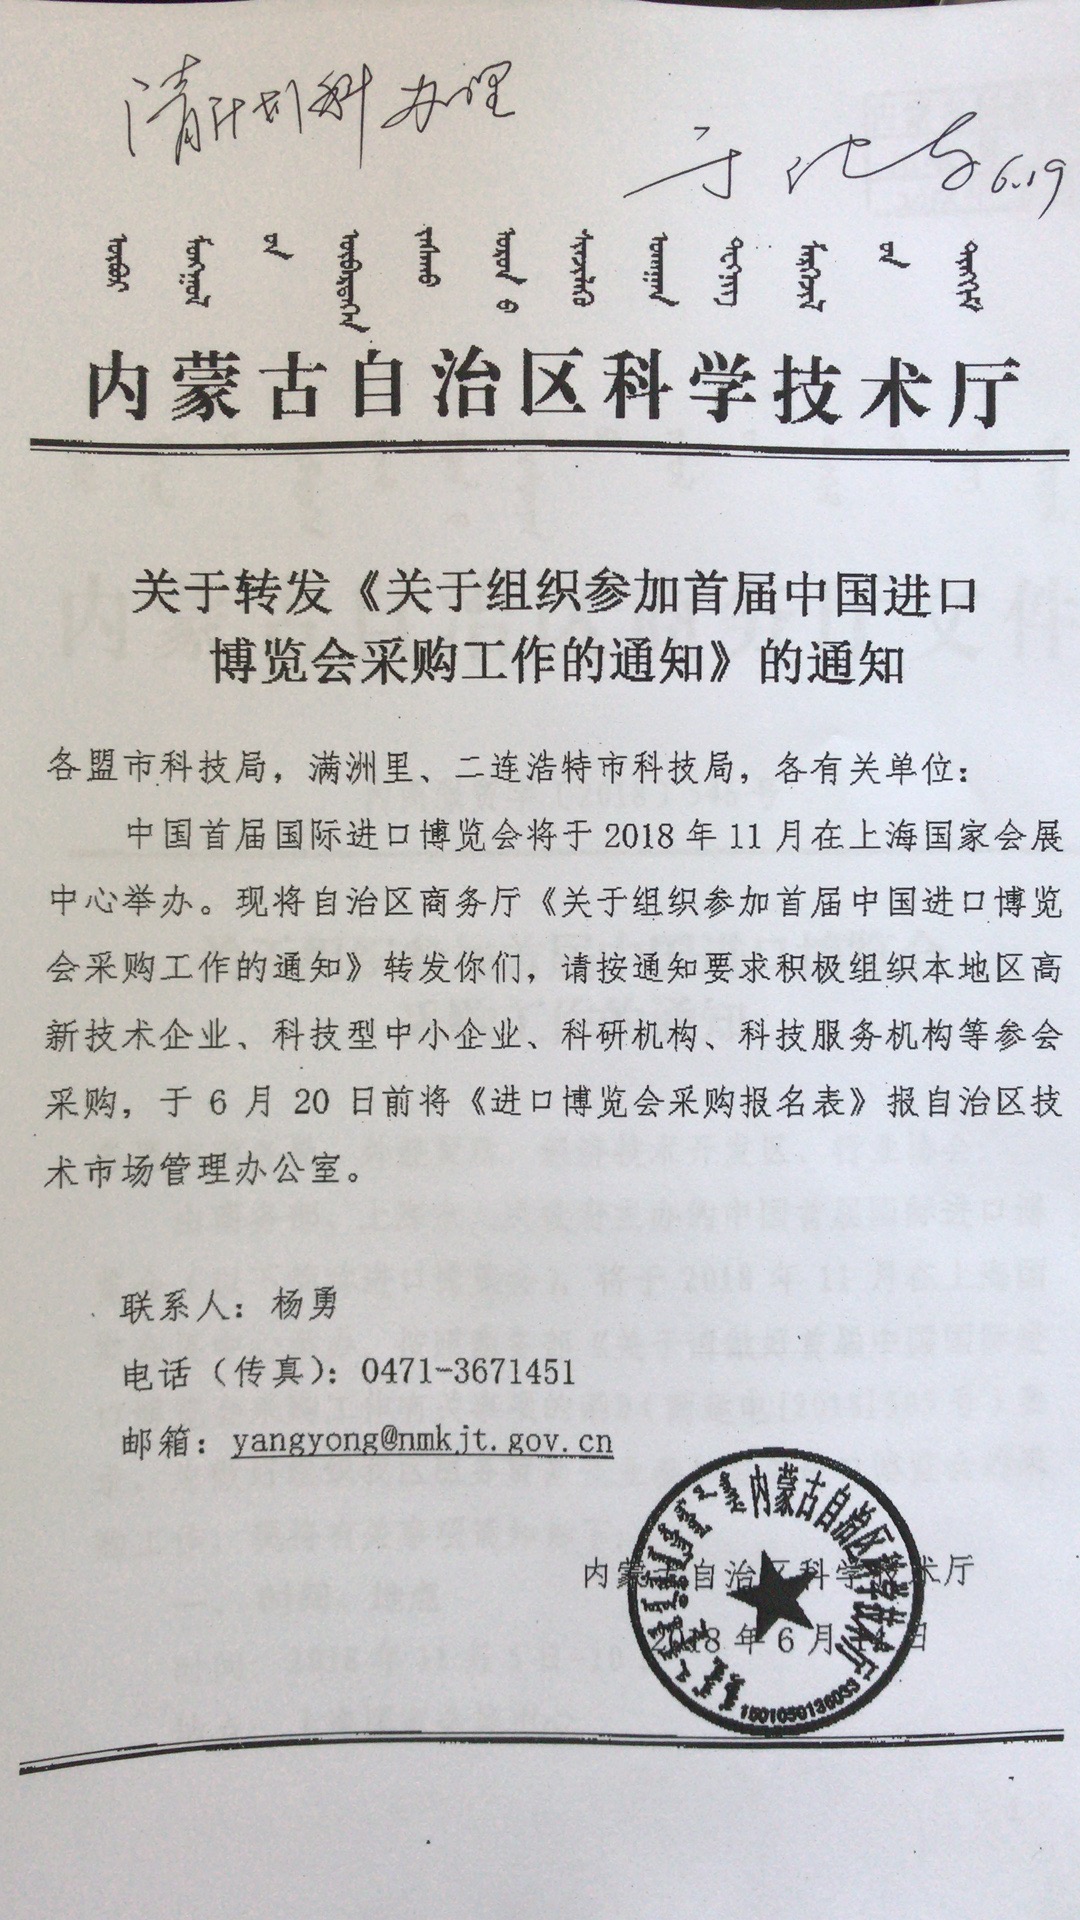 关于组织参加首届中国进口博览会采购工作的通知